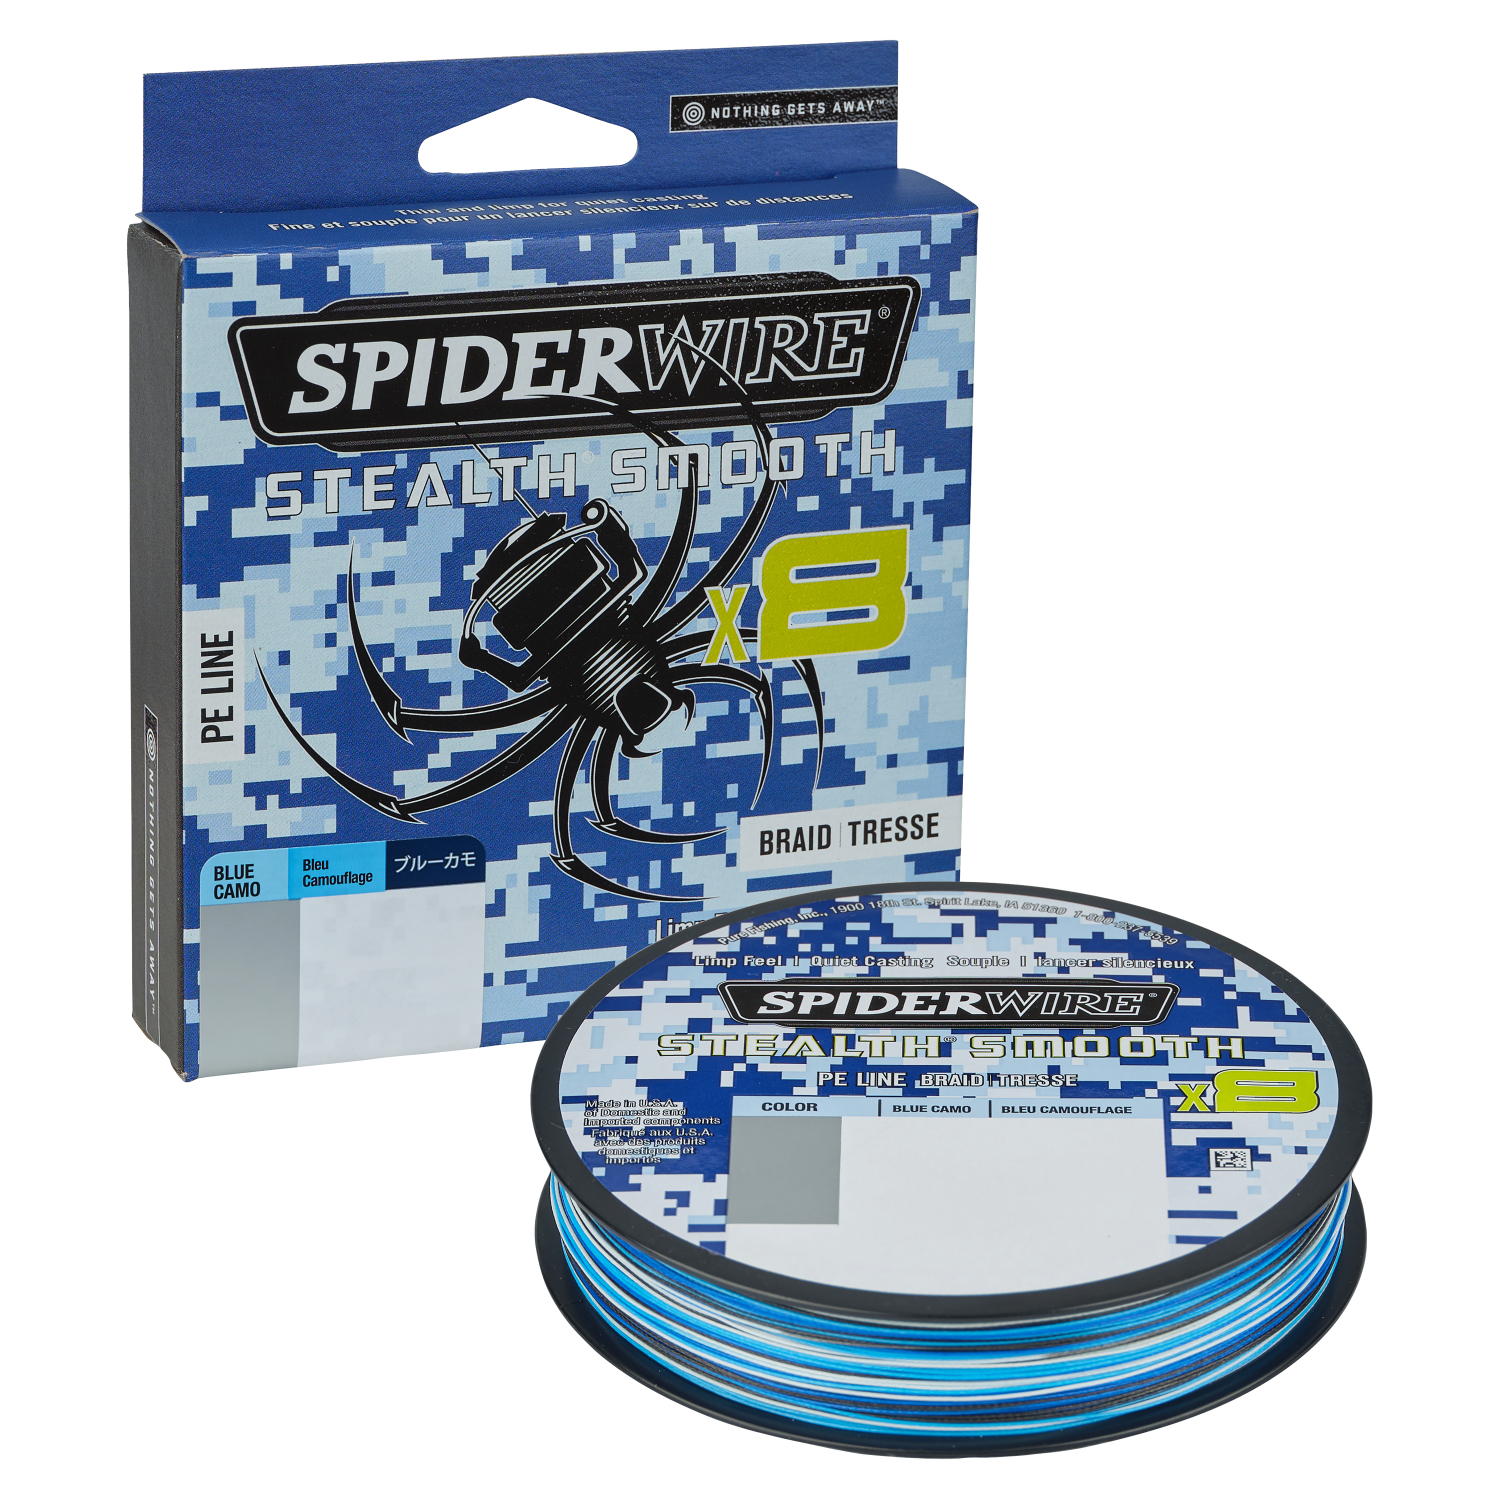 Spiderwire Angelschnur Stealth Smooth 8 (Blue Camo) 